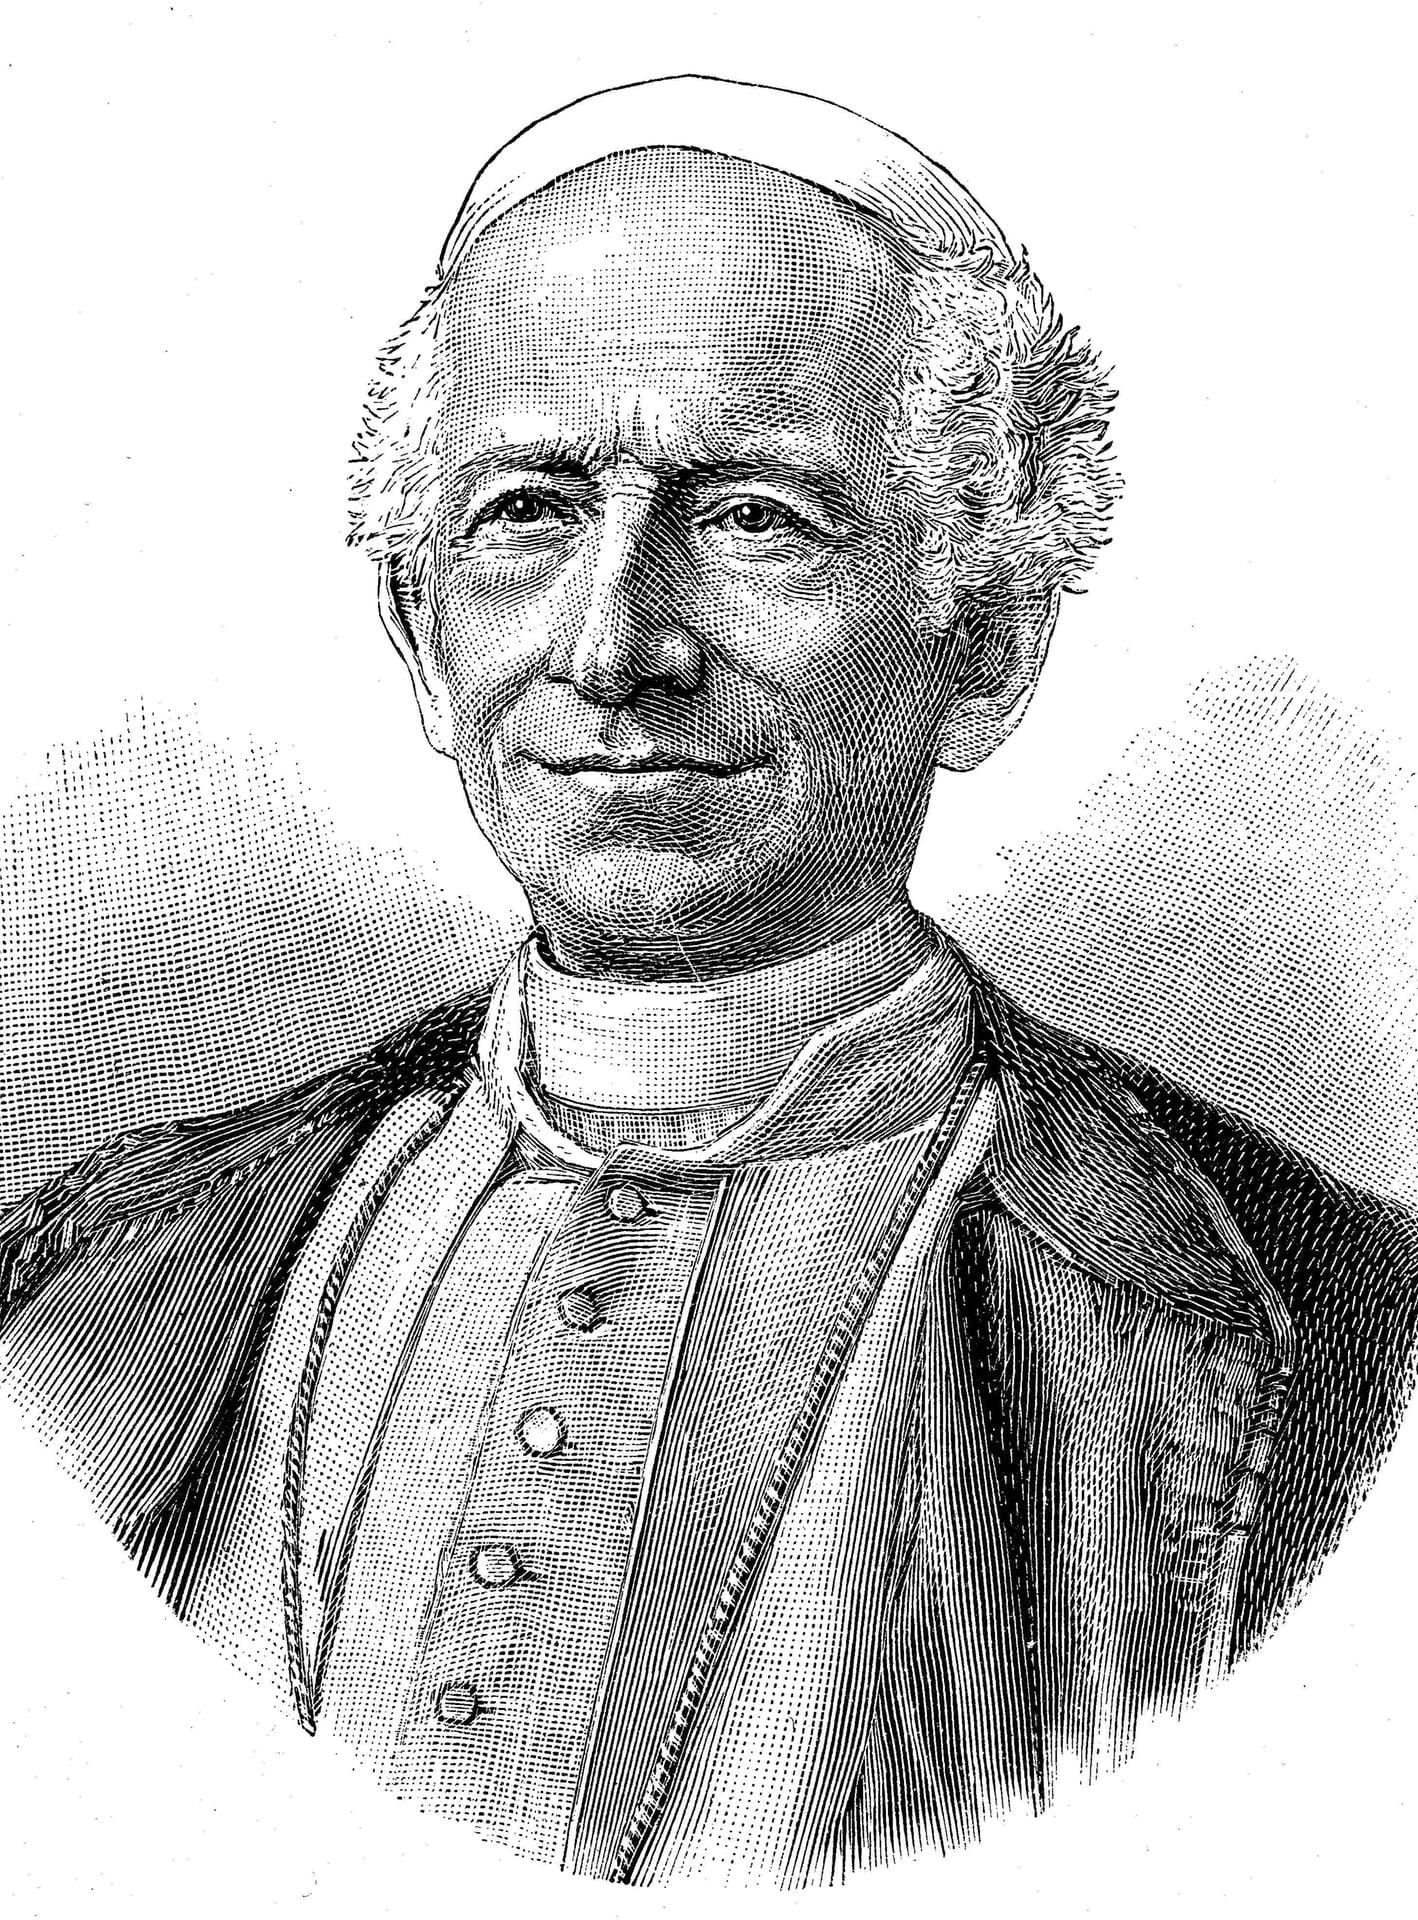 2. März 1810: Dieser Holzschnitt zeigt Papst Leo XIII. oder Vincenzo Gioacchino Pecci. Geboren wurde er im Département Rome, Frankreich. Mit 25 Jahren im Amt führte er das drittlängste Pontifikat der Geschichte (1878–1903).